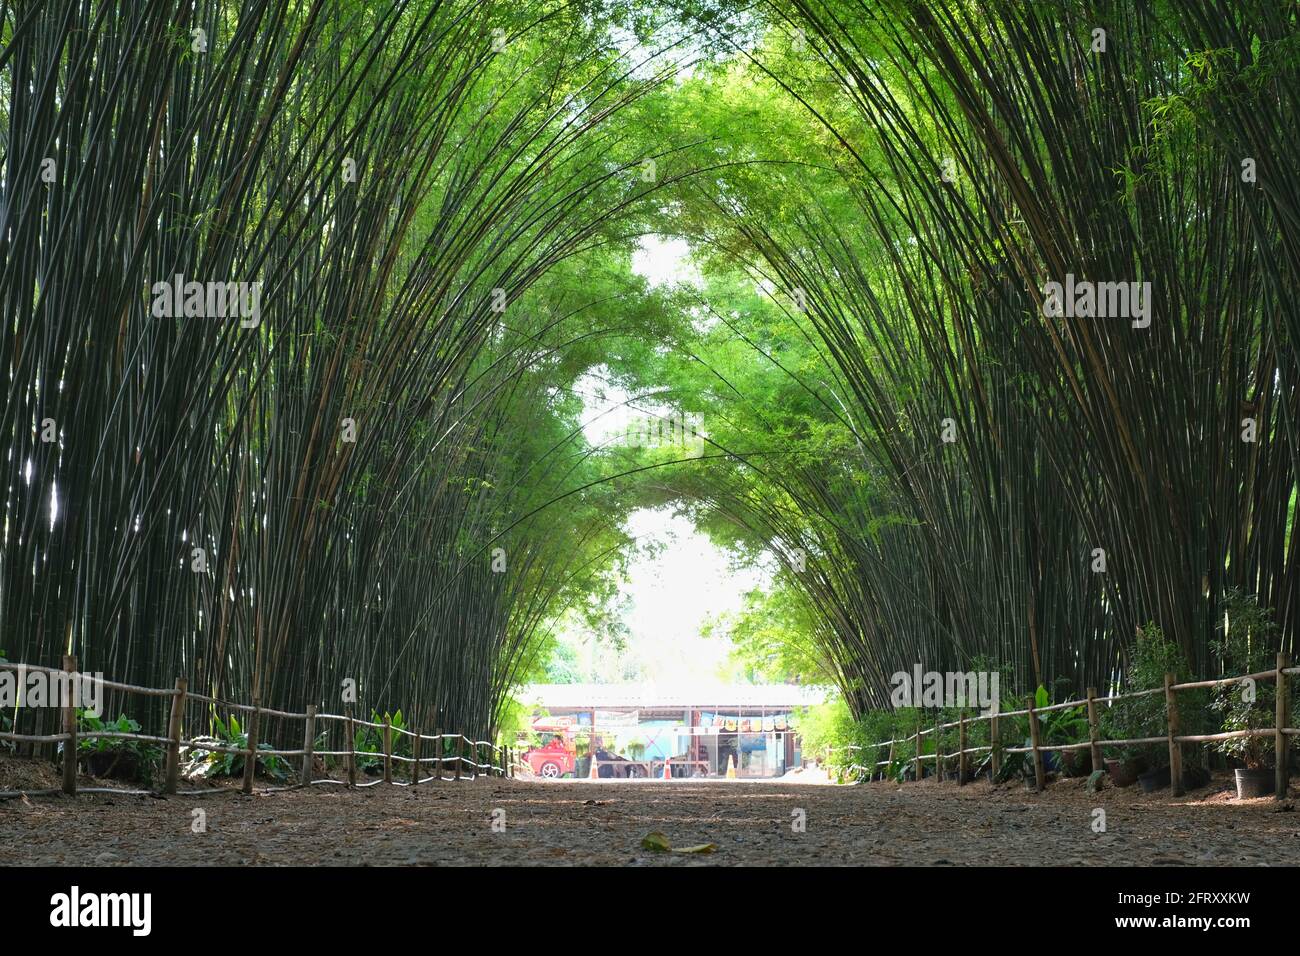 Nakorn Nayok, Thailandia - 04/13/2021: Bamboo Grove al tempio di Chulapornwararam nella Thailandia orientale con splendidi e lussureggianti alberi di bambù che formano un tunnel. Foto Stock